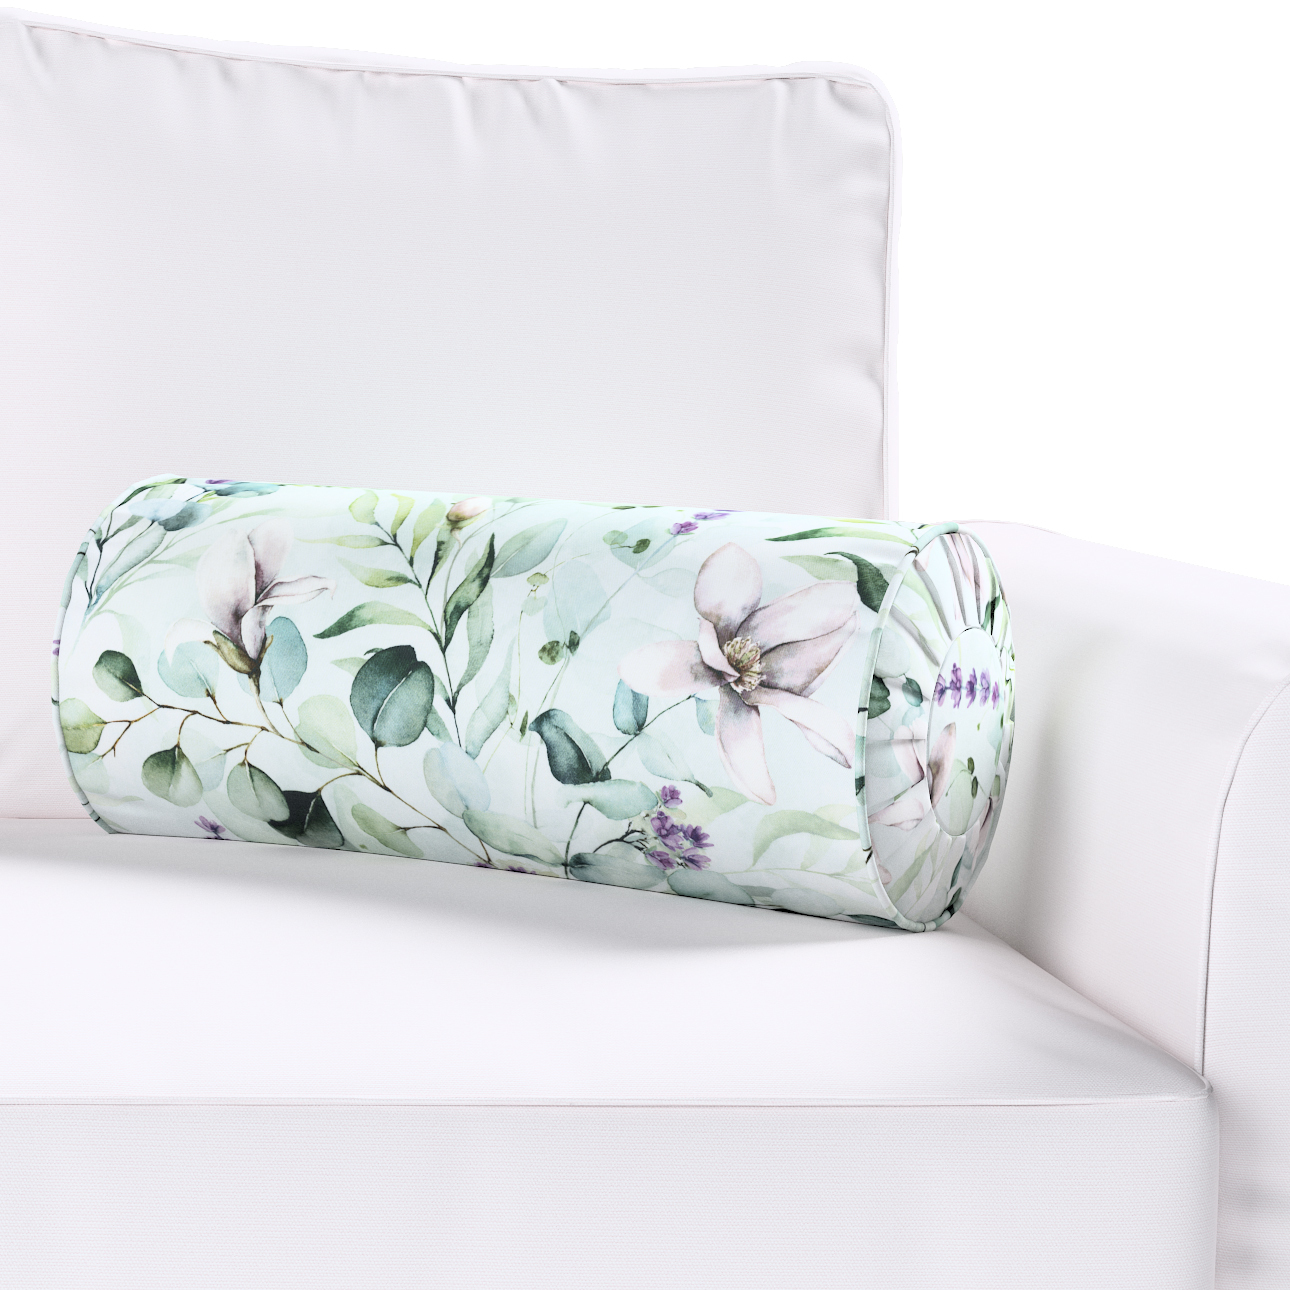 Nackenrolle mit Falten, mintgrün-weiß, Ø 20 x 50 cm, Flowers (143-66) günstig online kaufen